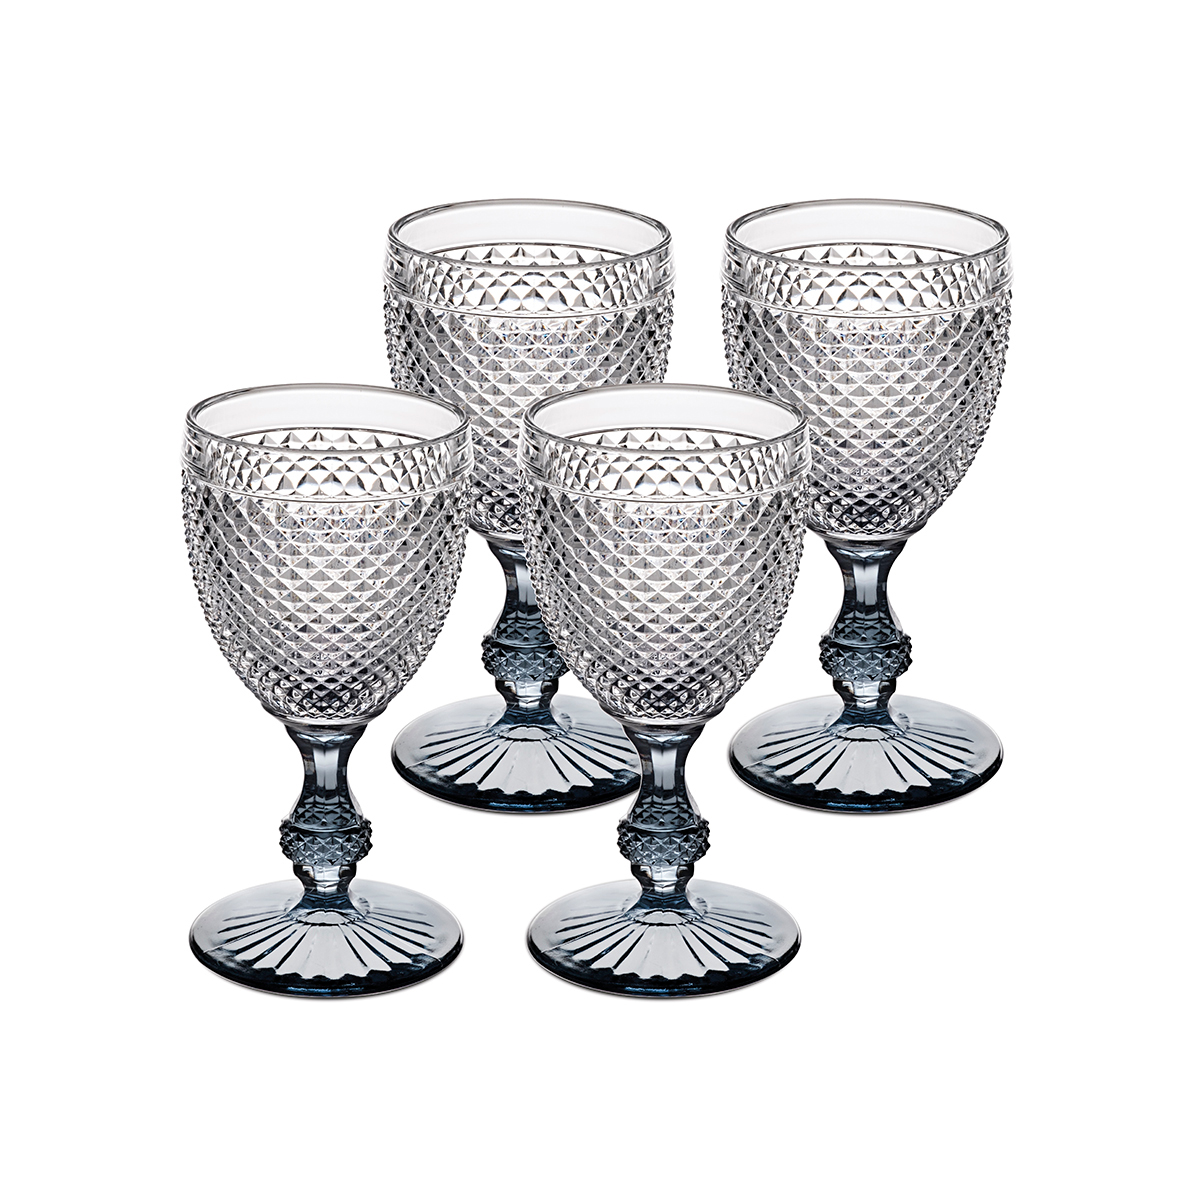 Vista Alegre Glass Bicos Bicolor Goblet With Grey Stem, Set of 4